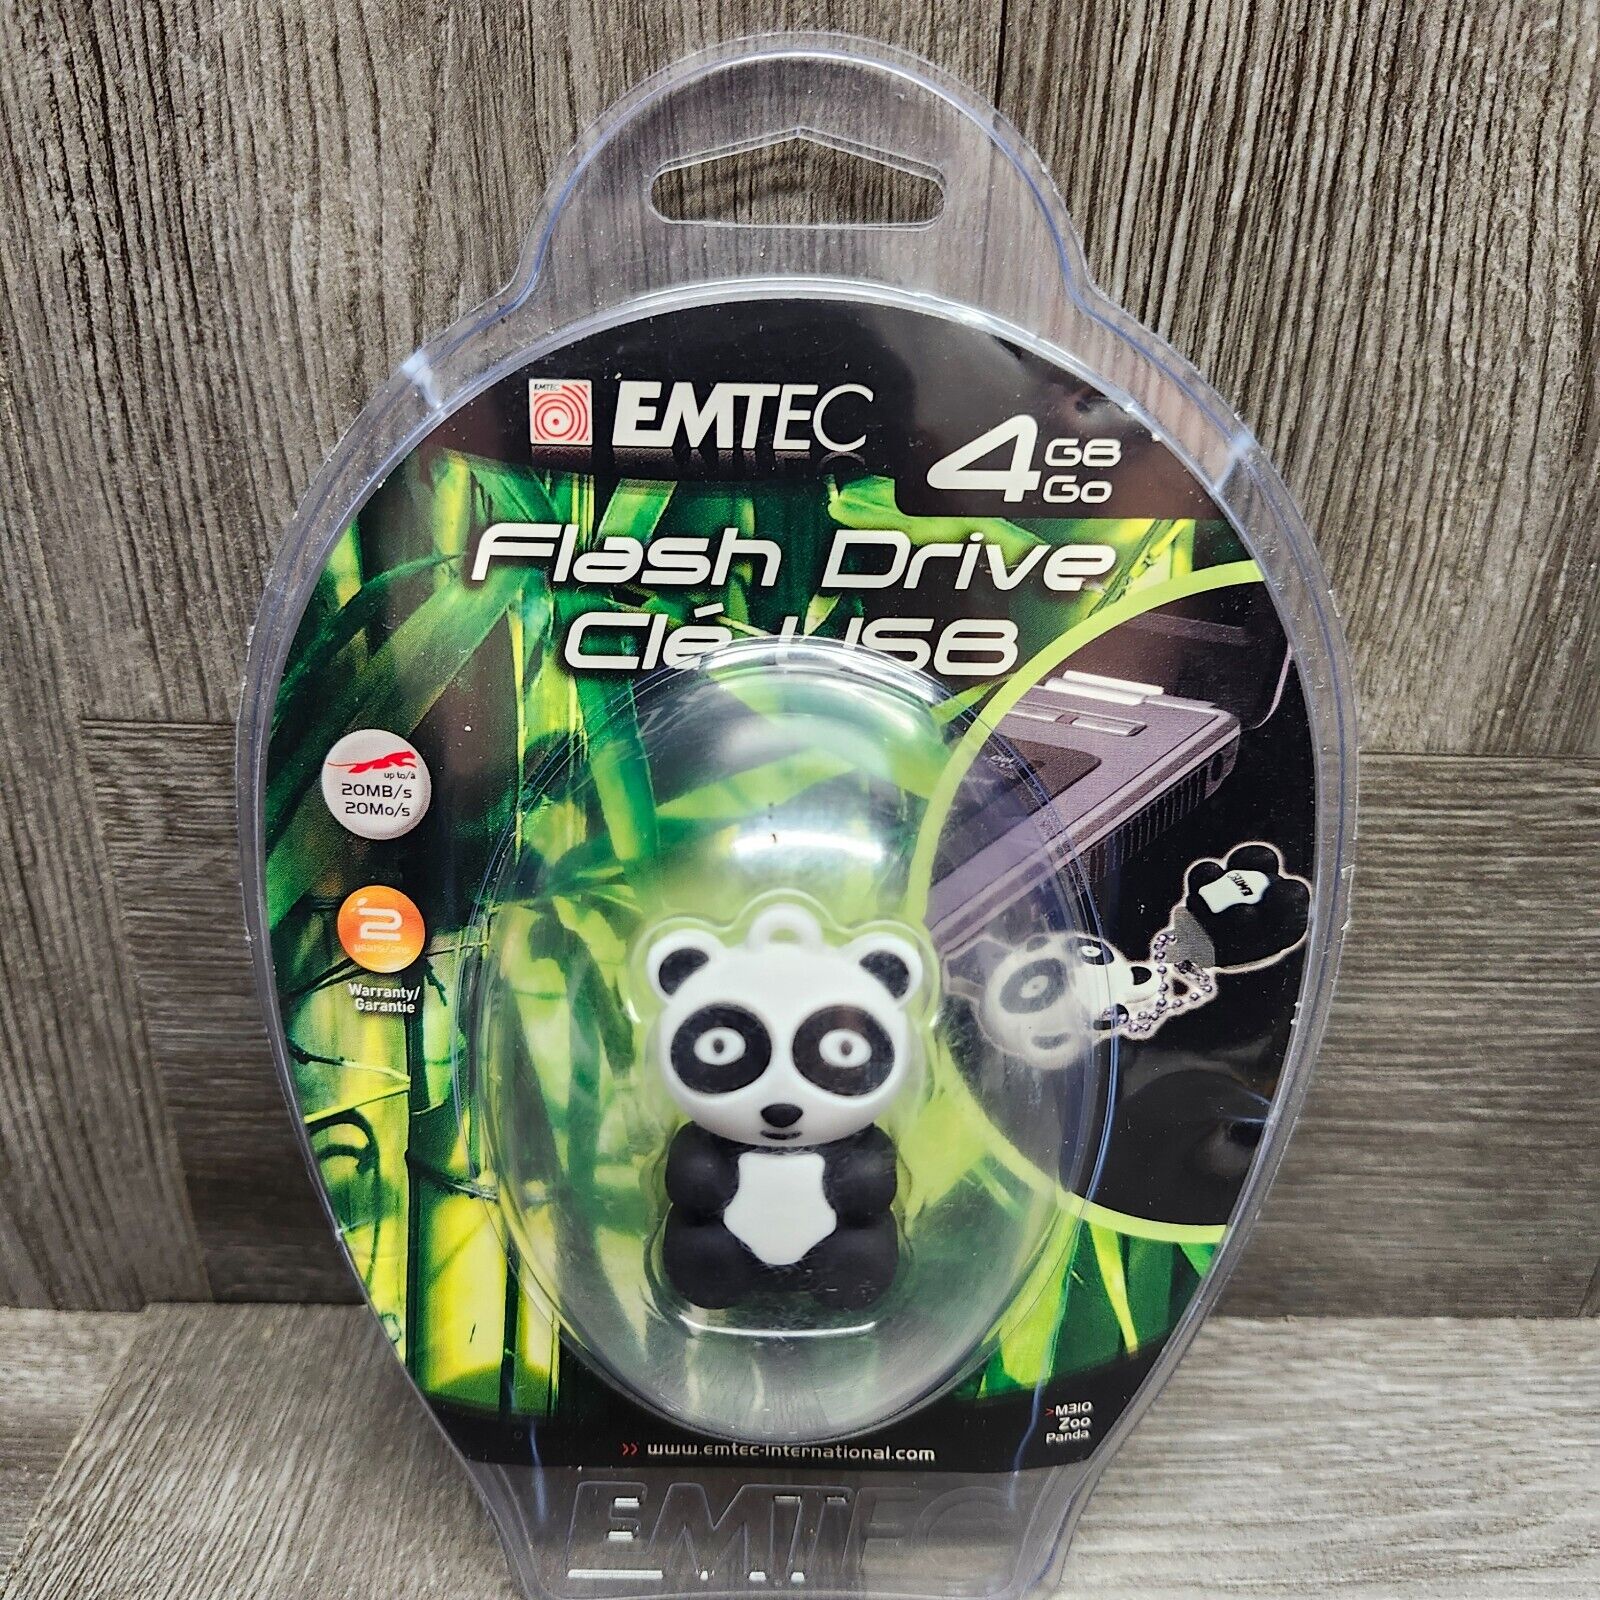 Emtec USB Flash Drive Panda 4gb